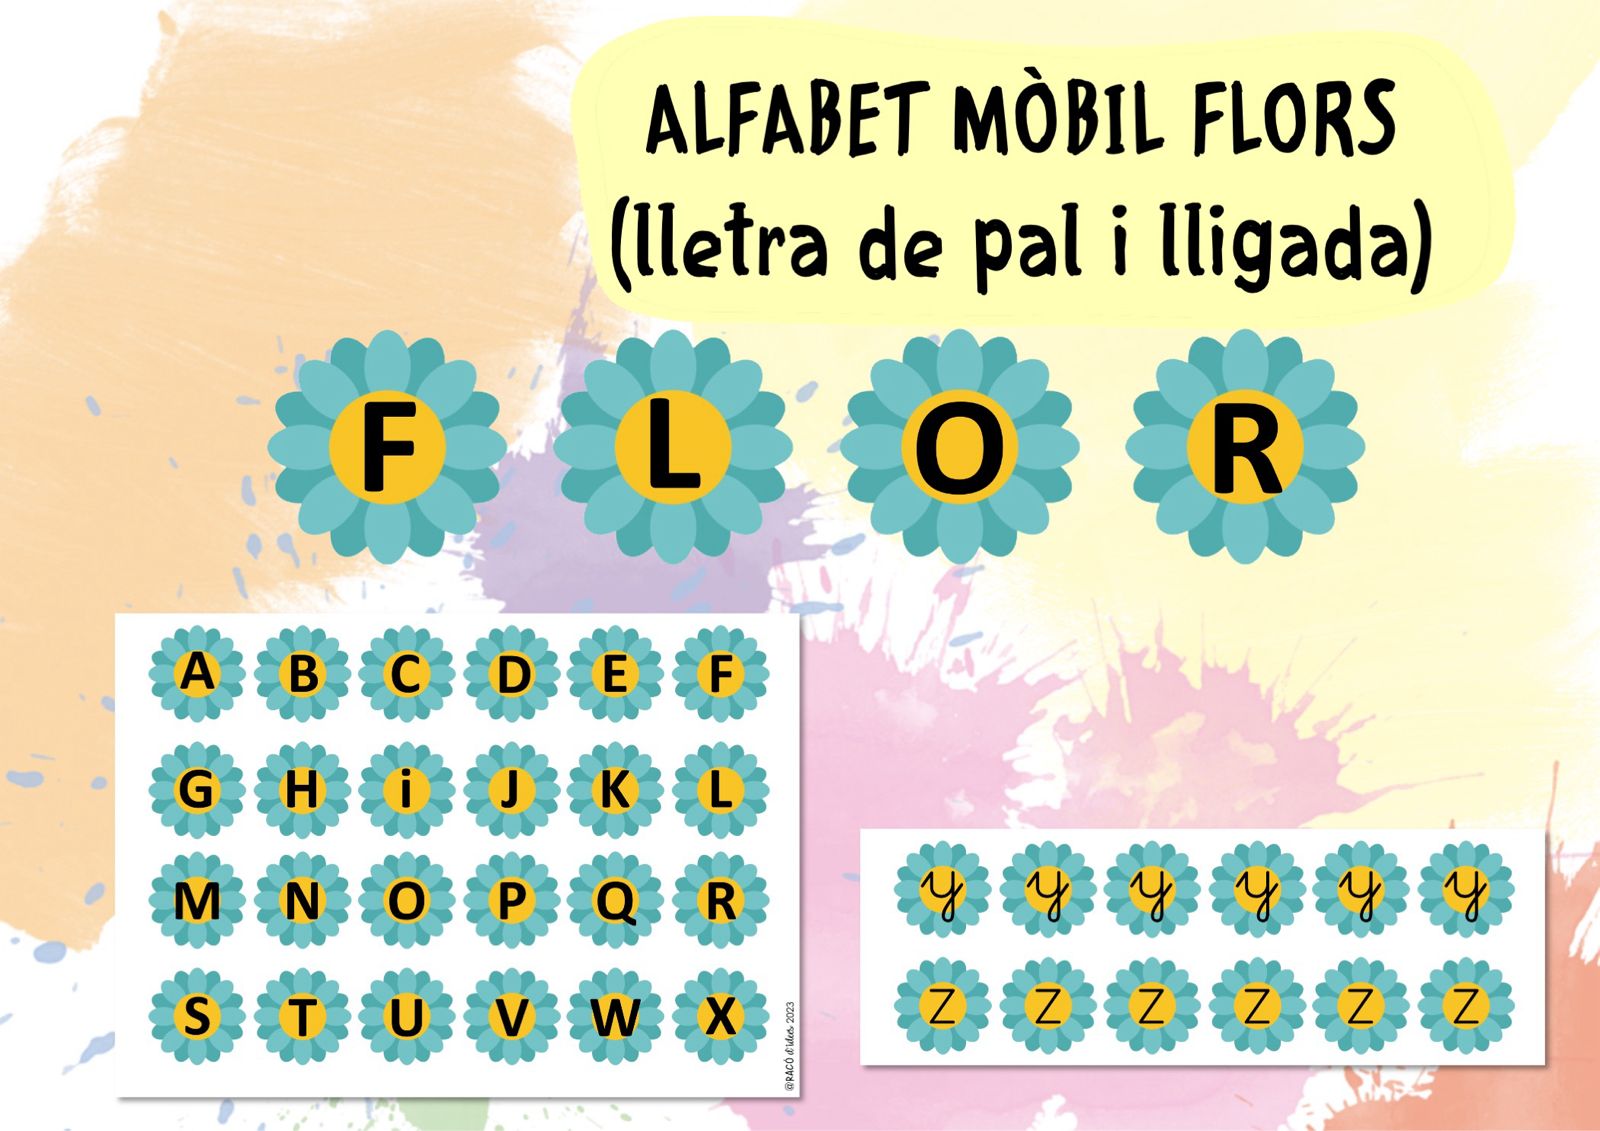 Alfabet mòbil flors